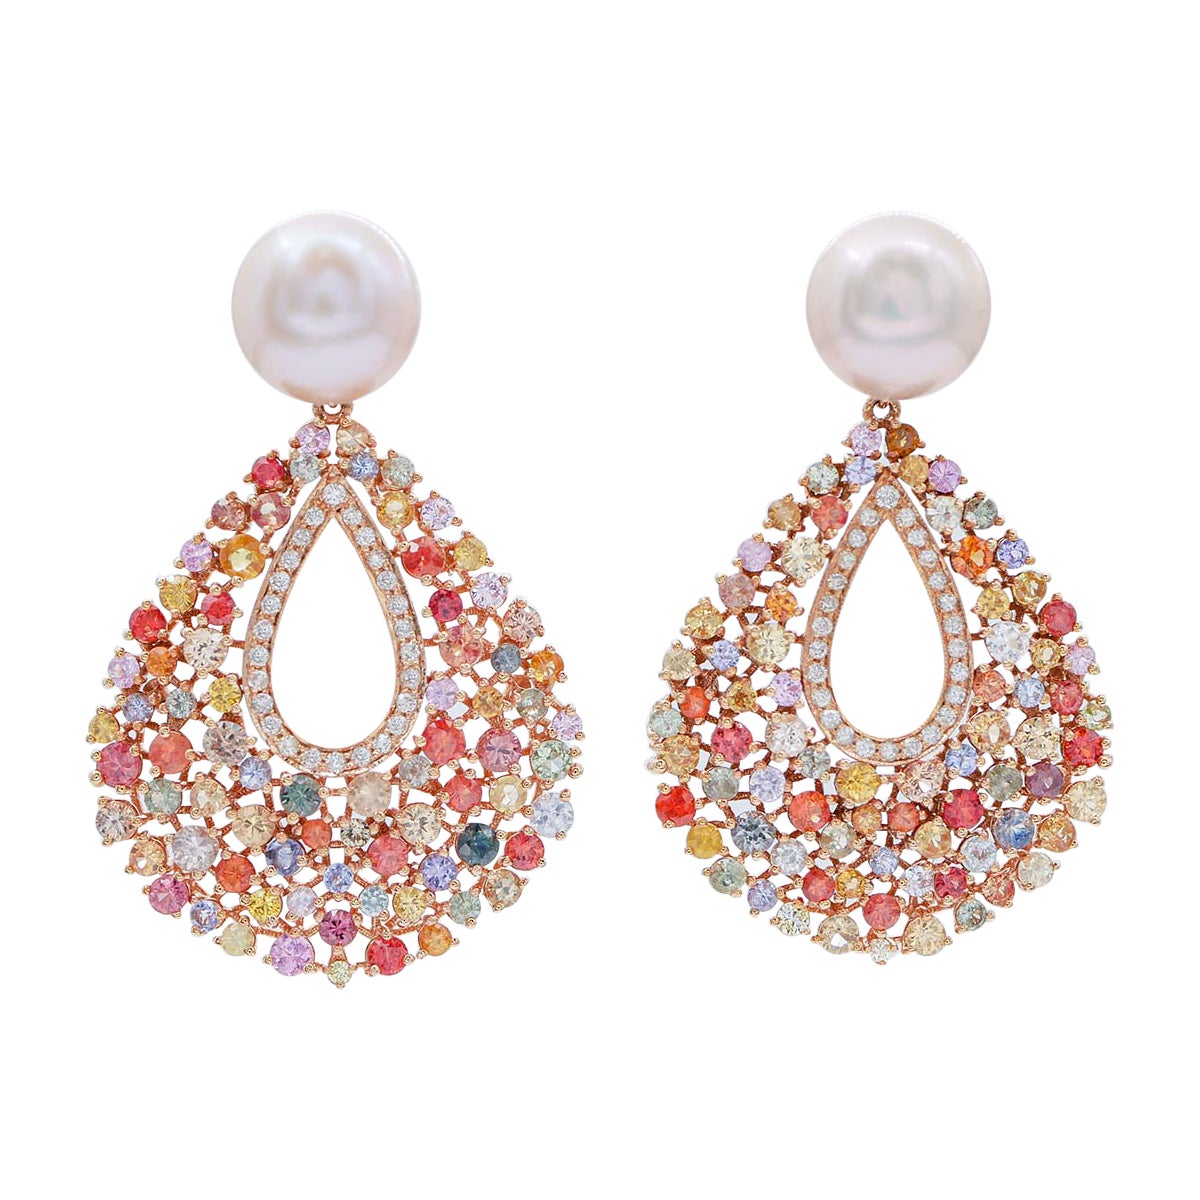 Boucles d'oreilles en or rose 14 carats, tanzanite, saphirs multicolores et diamants